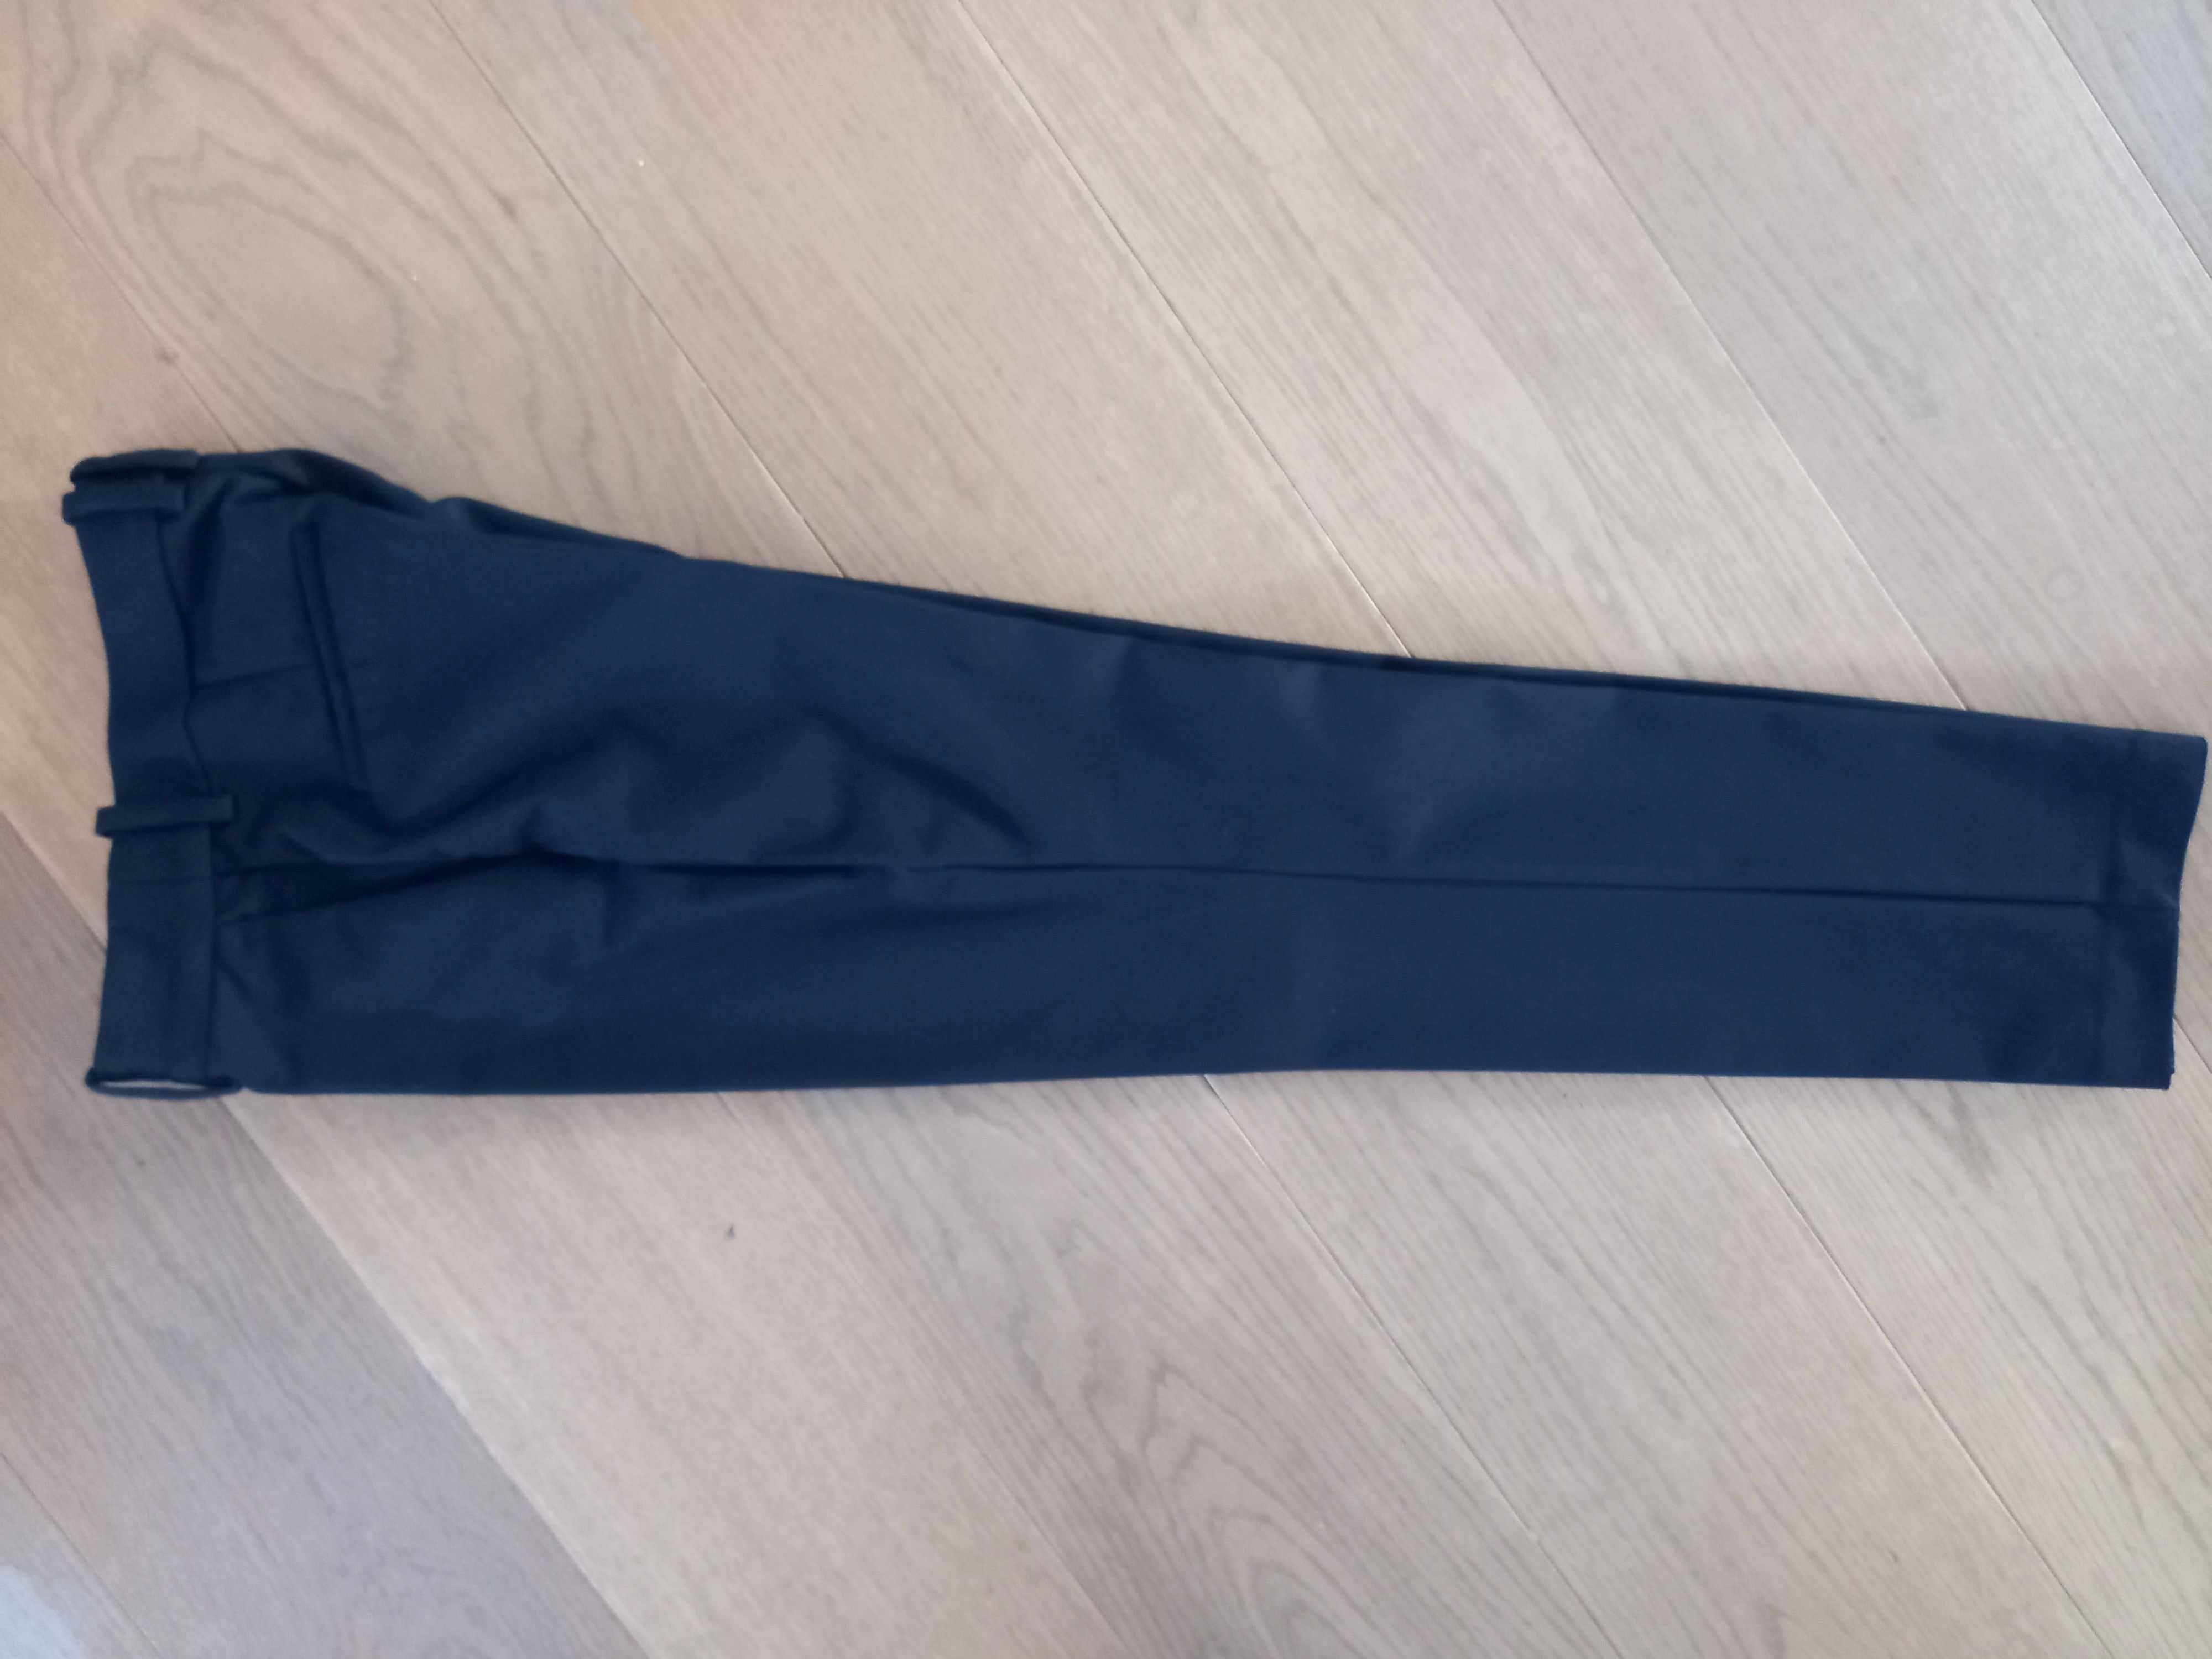 H&M spodnie czarne wizytowe eleganckie r. 34 / XS